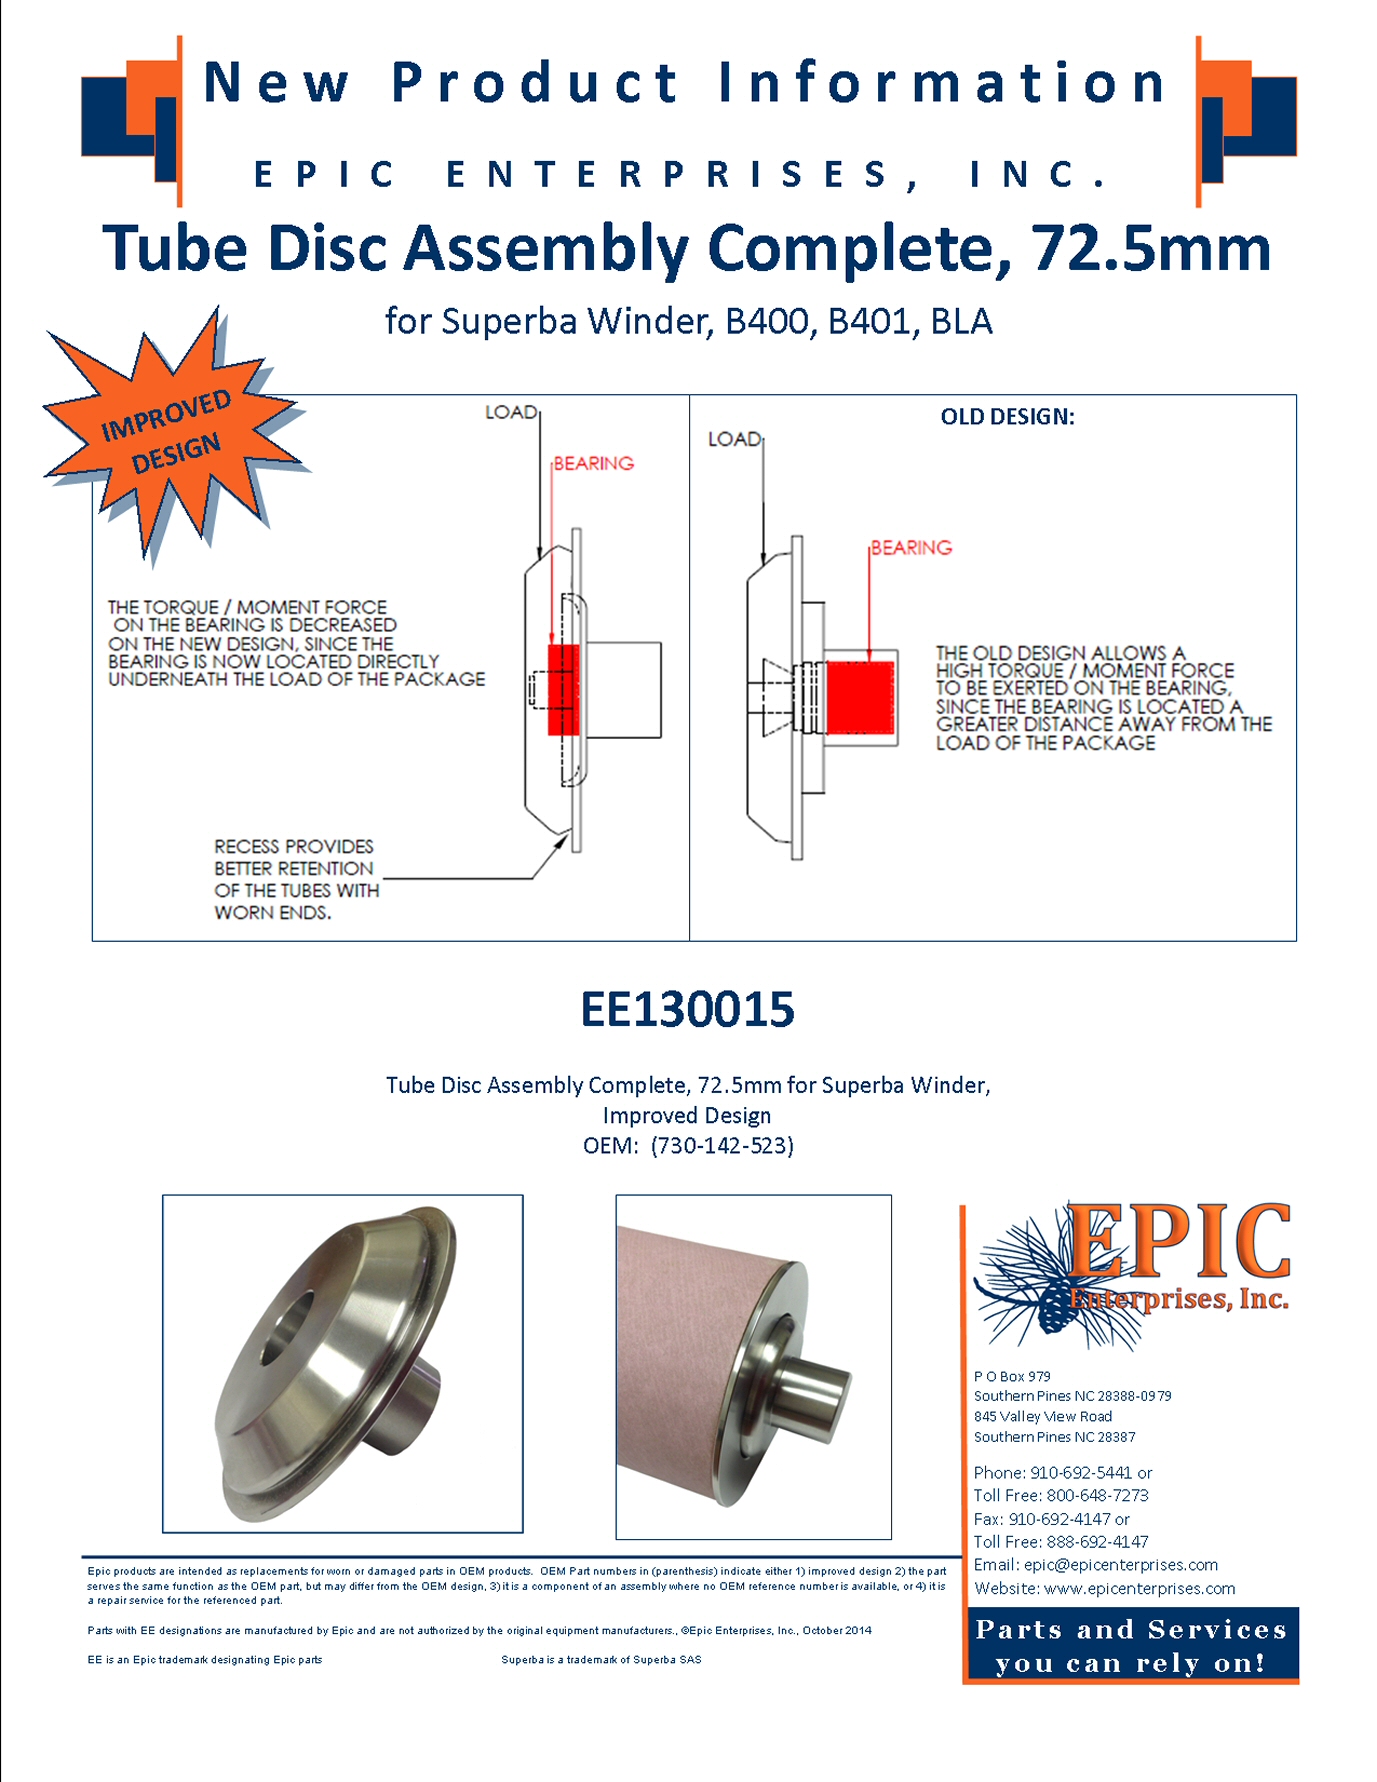 EE130015 Tube Disc Assembly Complete, 72.5mm for Superba Winder, B400, B401, BLA, Improved Design